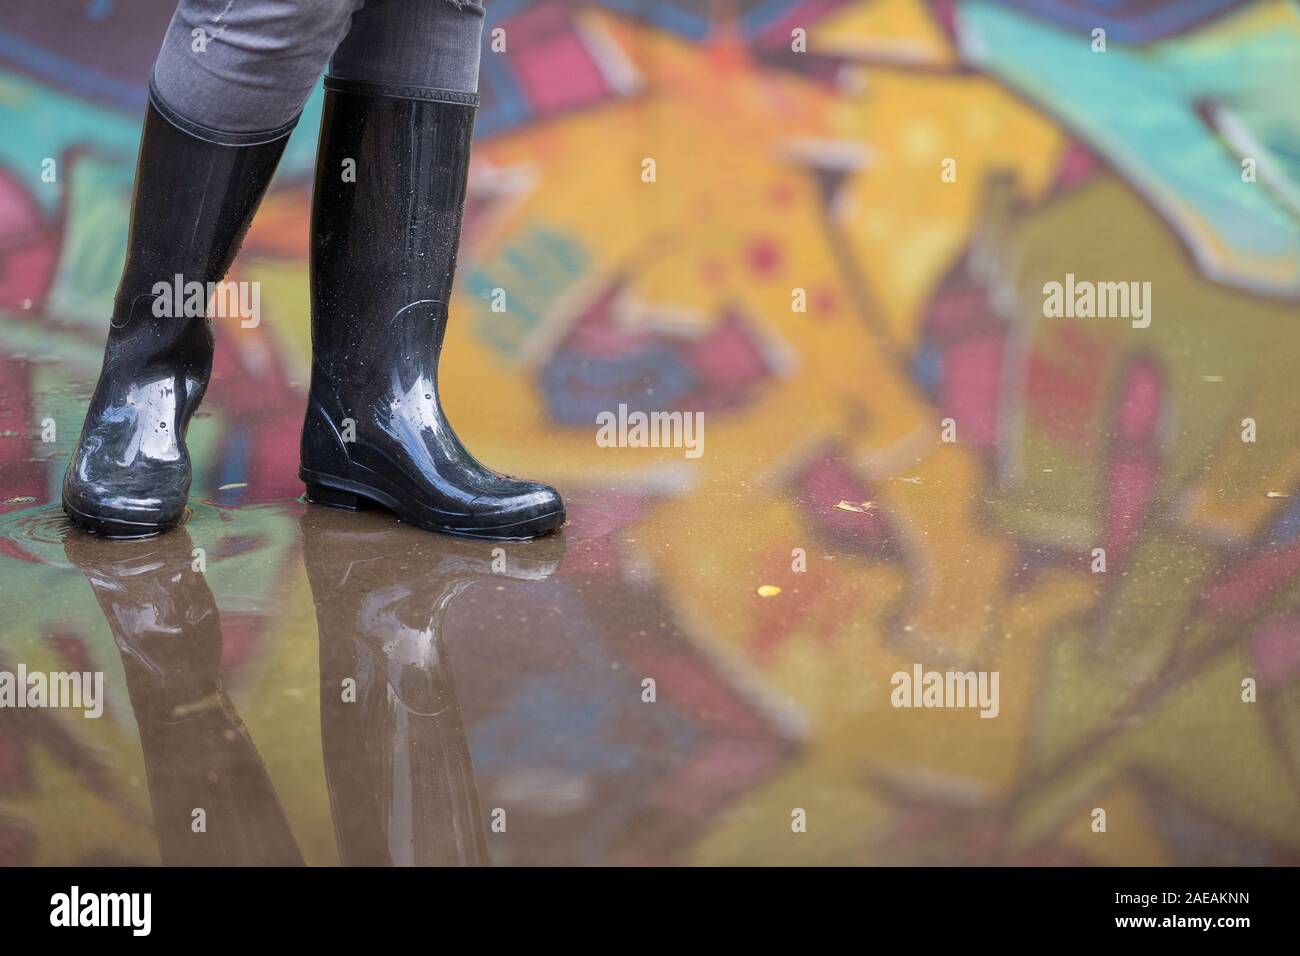 Mädchen in Gummistiefel in der Pfütze auf der Straße stand. Frau in Grau  Gummi stiefel Spritzen in eine Pfütze nach Regen. Paar graue Gummistiefel  in Einem Stockfotografie - Alamy